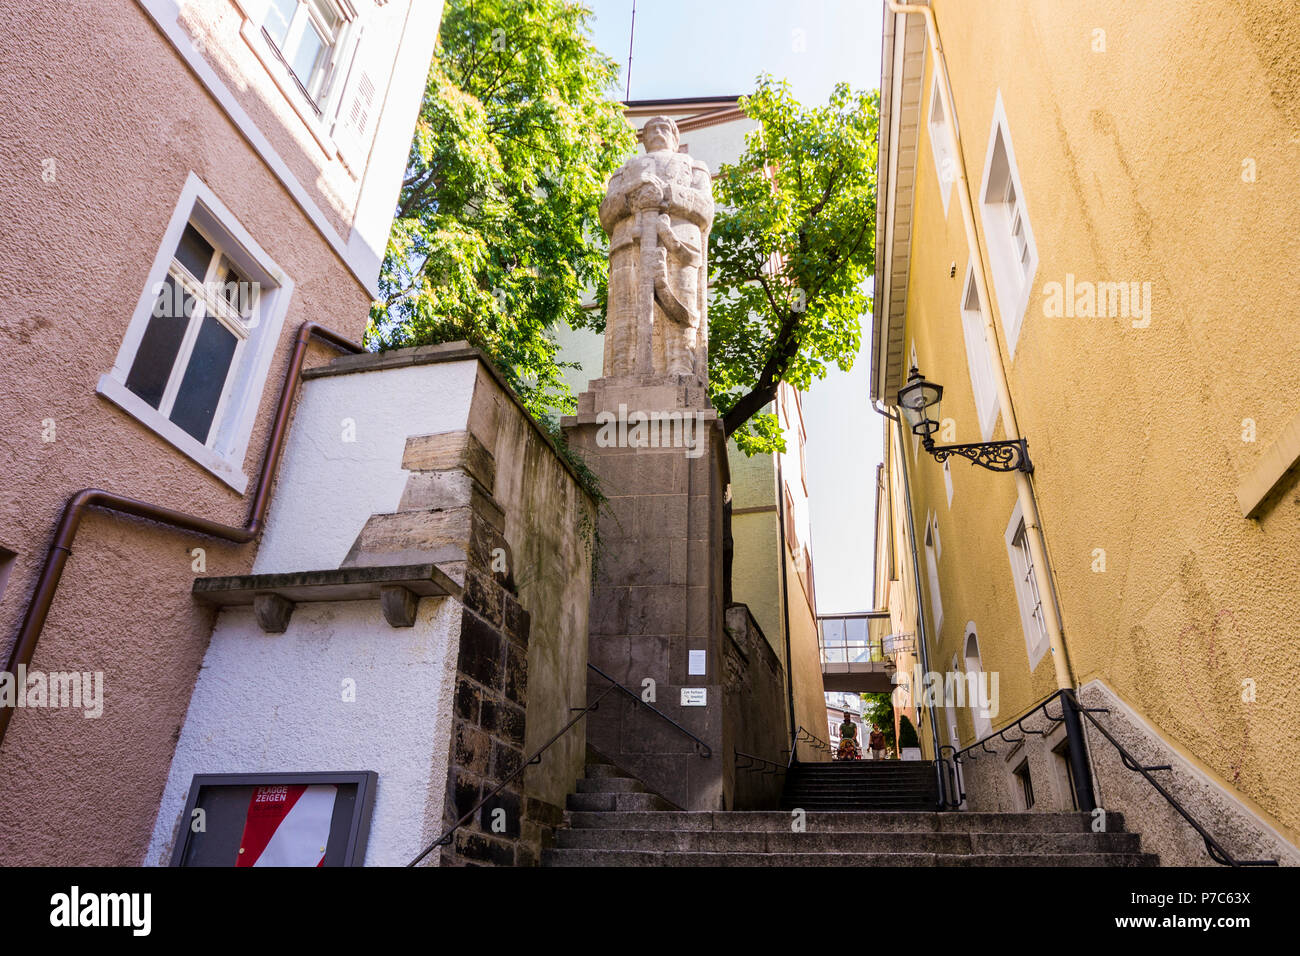 Baden-Baden, Alemania. Jesuitenstaffeln, una calle de la Ciudad Vieja (Altstadt), con una estatua de Otto von Bismarck, primer canciller del Imperio Alemán Foto de stock